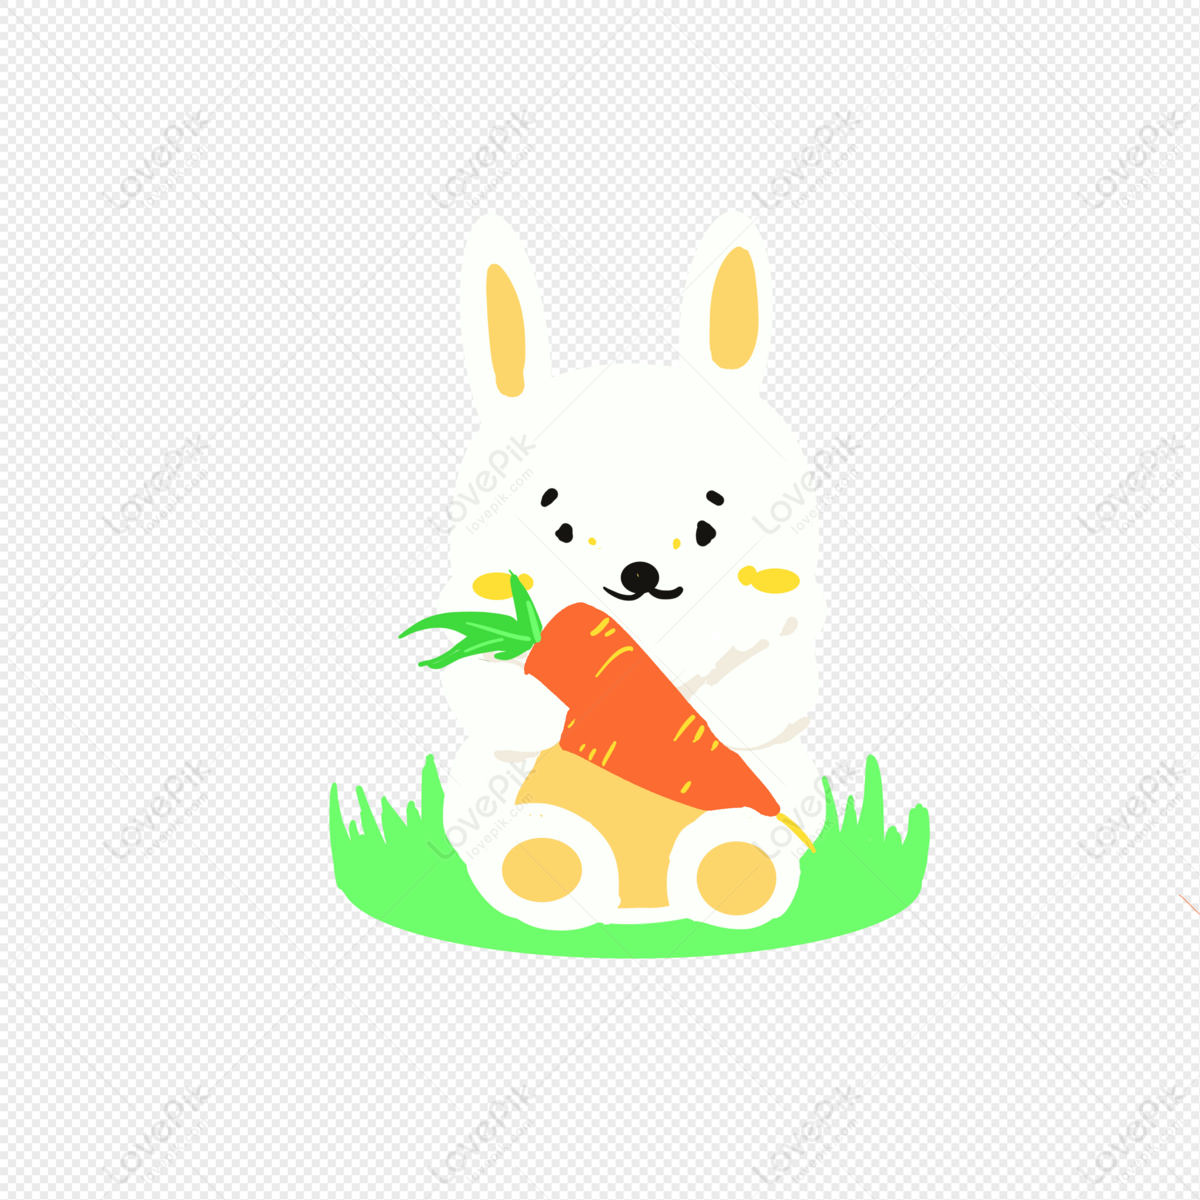 Con thỏ là loài động vật đáng yêu và khá thích ăn cà rốt. Bạn muốn xem bức tranh về thỏ ăn cà rốt đáng yêu? Hãy truy cập ngay nguồn hình của chúng tôi để được thỏa mãn sở thích của bạn!